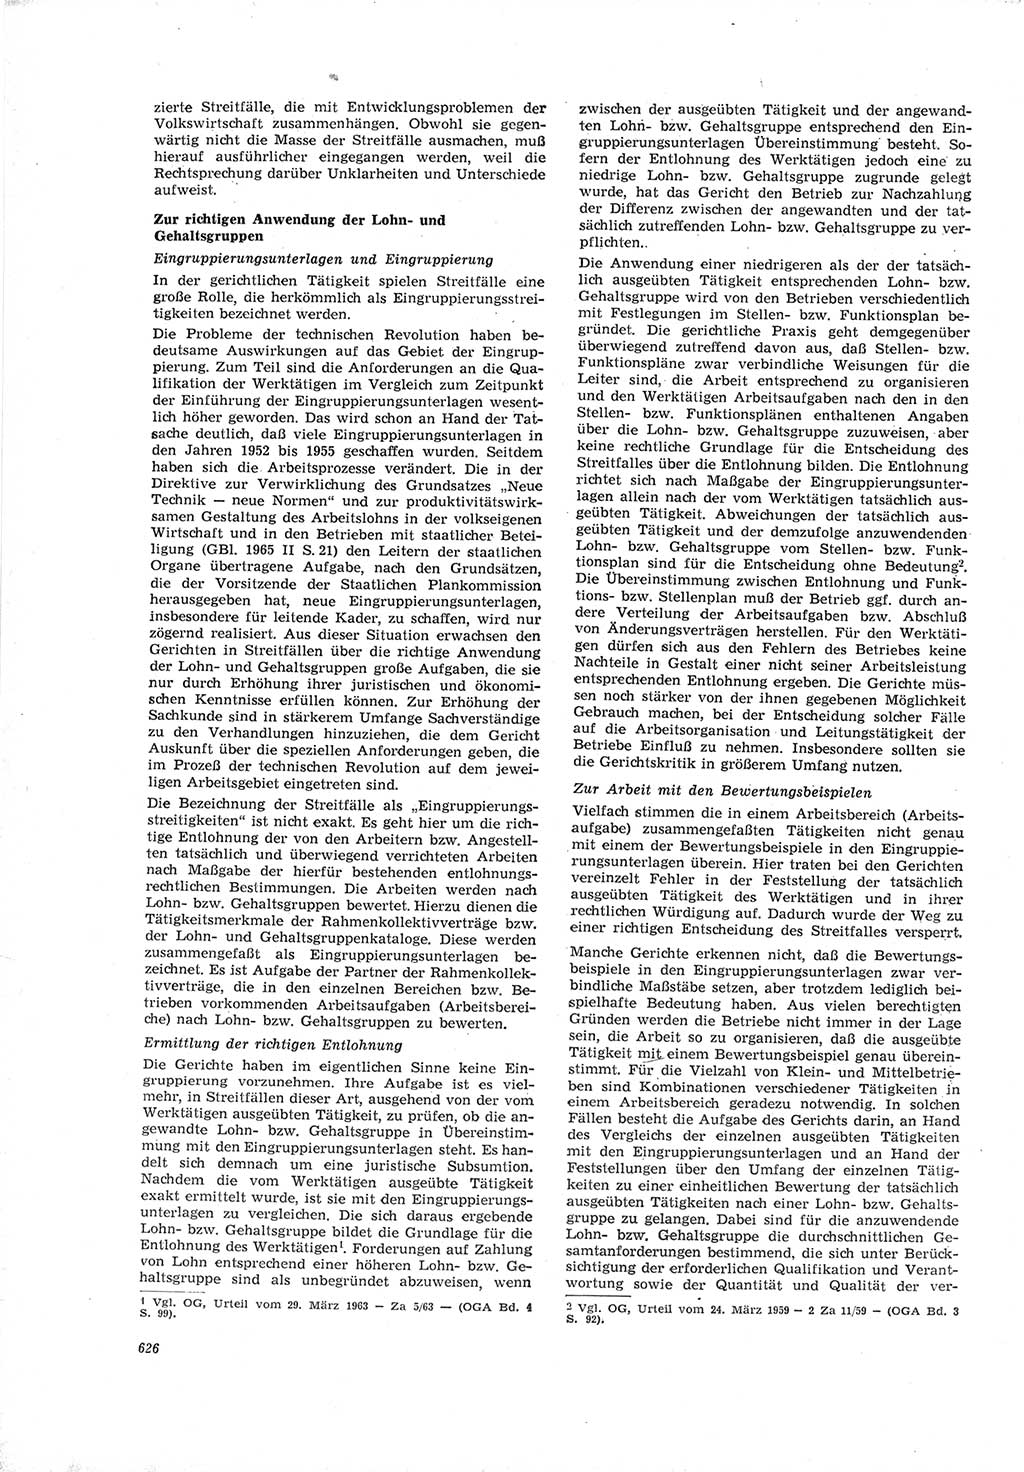 Neue Justiz (NJ), Zeitschrift für Recht und Rechtswissenschaft [Deutsche Demokratische Republik (DDR)], 19. Jahrgang 1965, Seite 626 (NJ DDR 1965, S. 626)